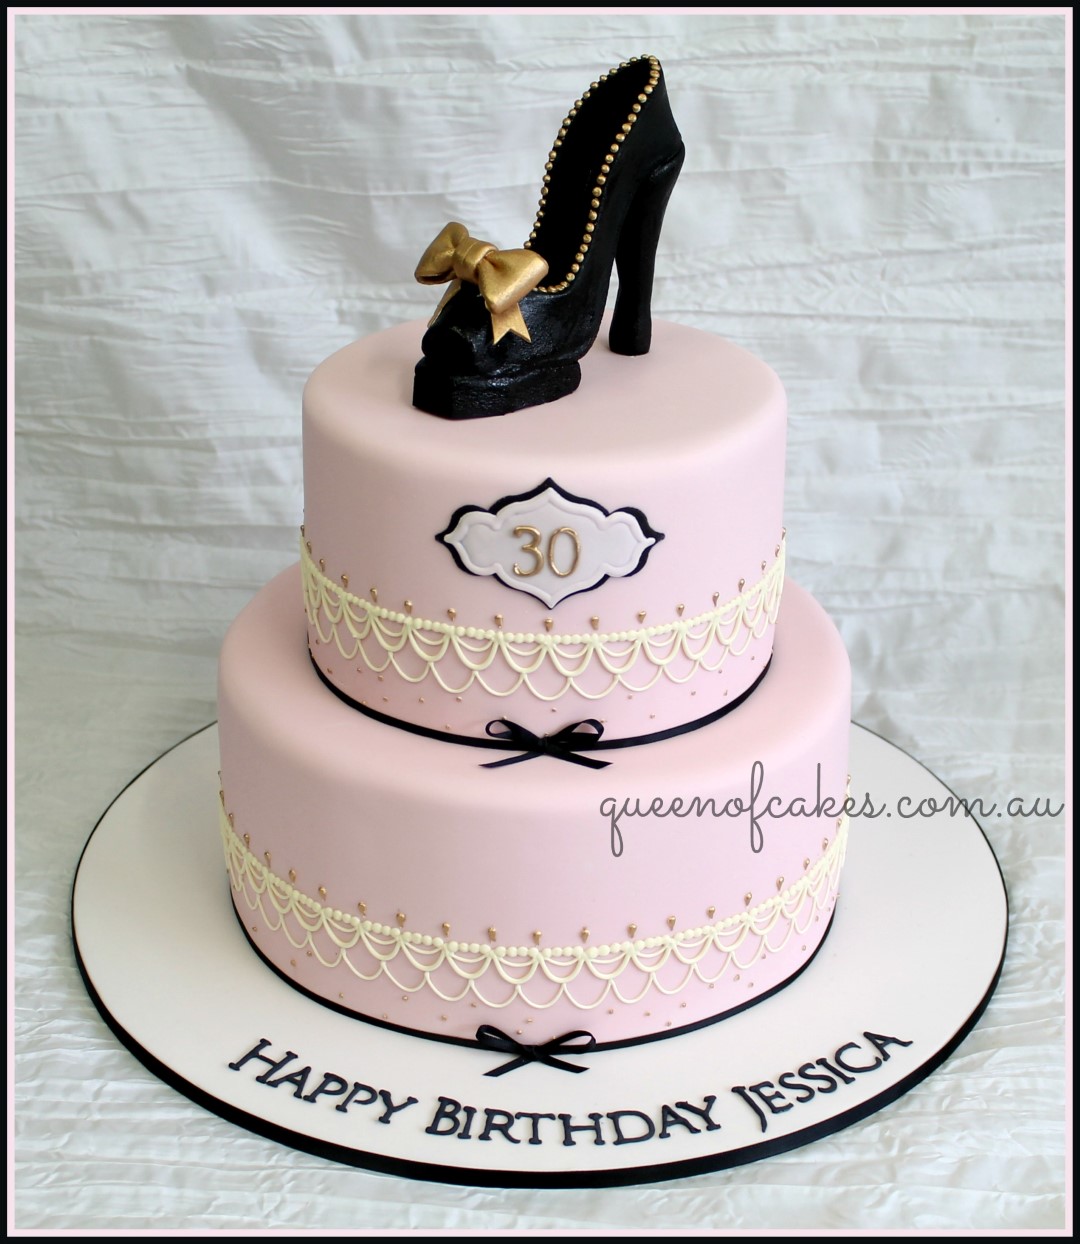 Birthday Cakes | Queen of Cakes